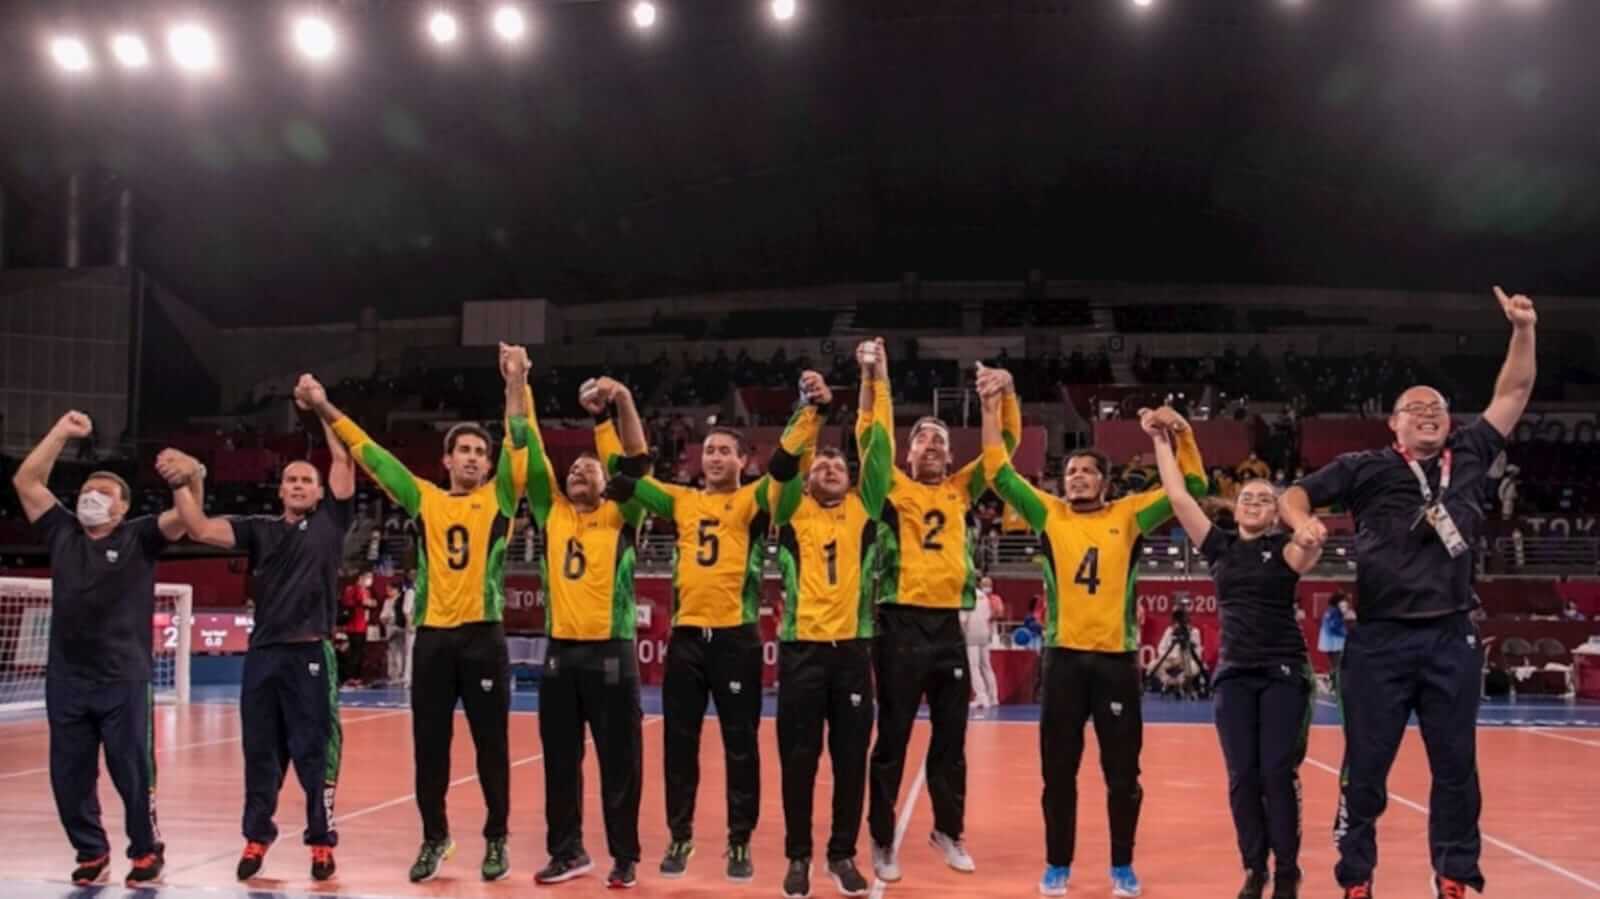 Equipe da Seleção Brasileira de Goalball comemorando vitória em Tóquio